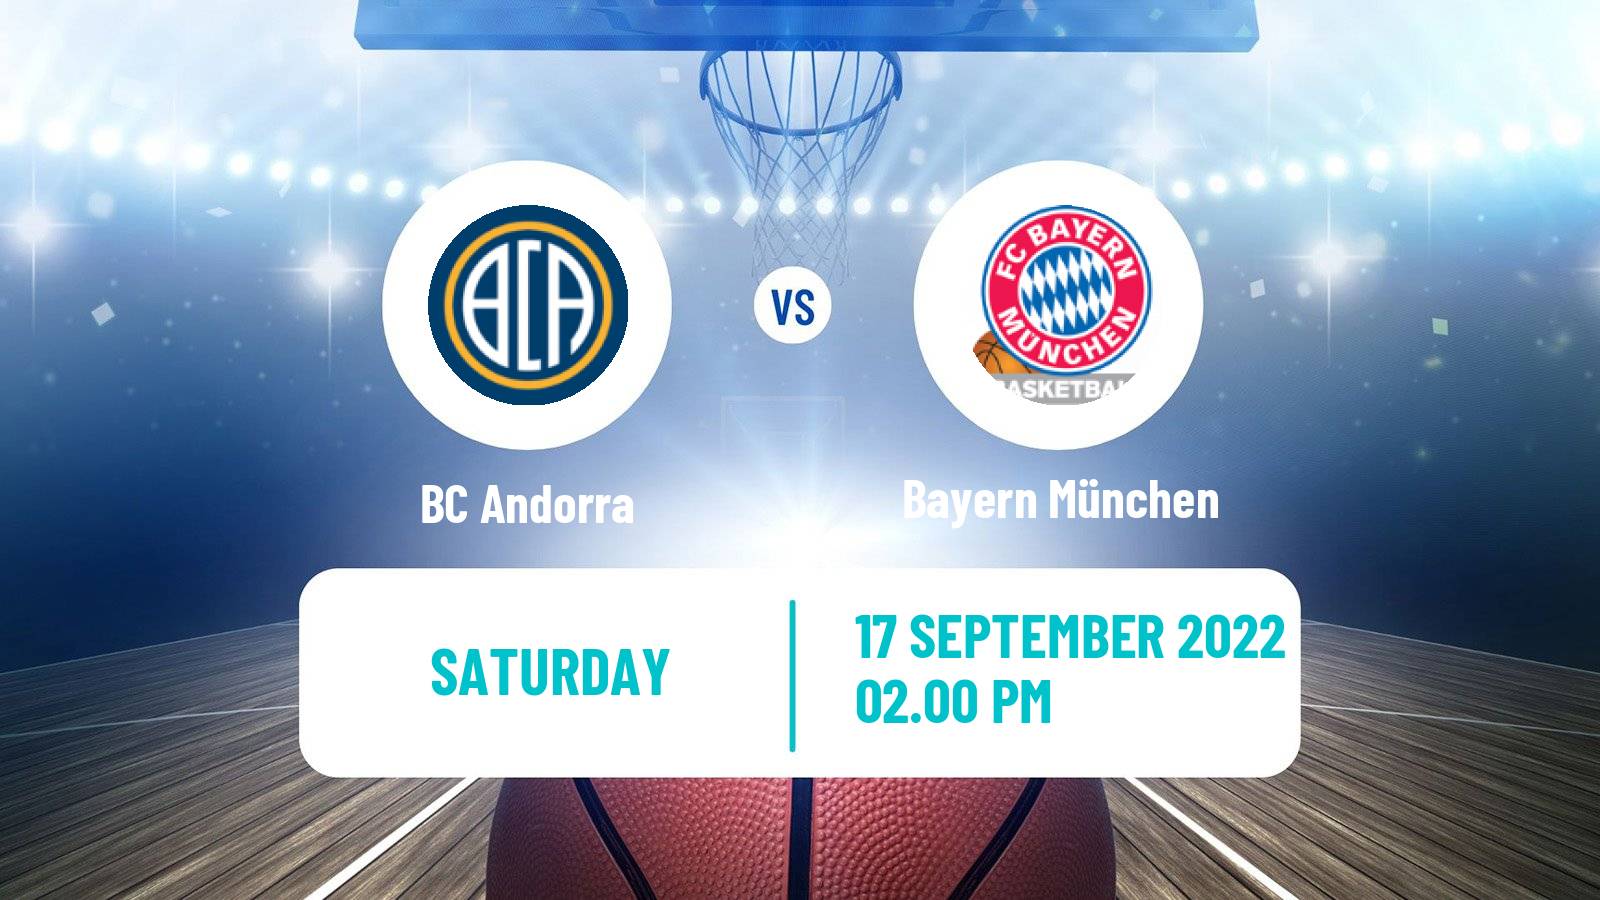 Basketball Club Friendly Basketball BC Andorra - Bayern München